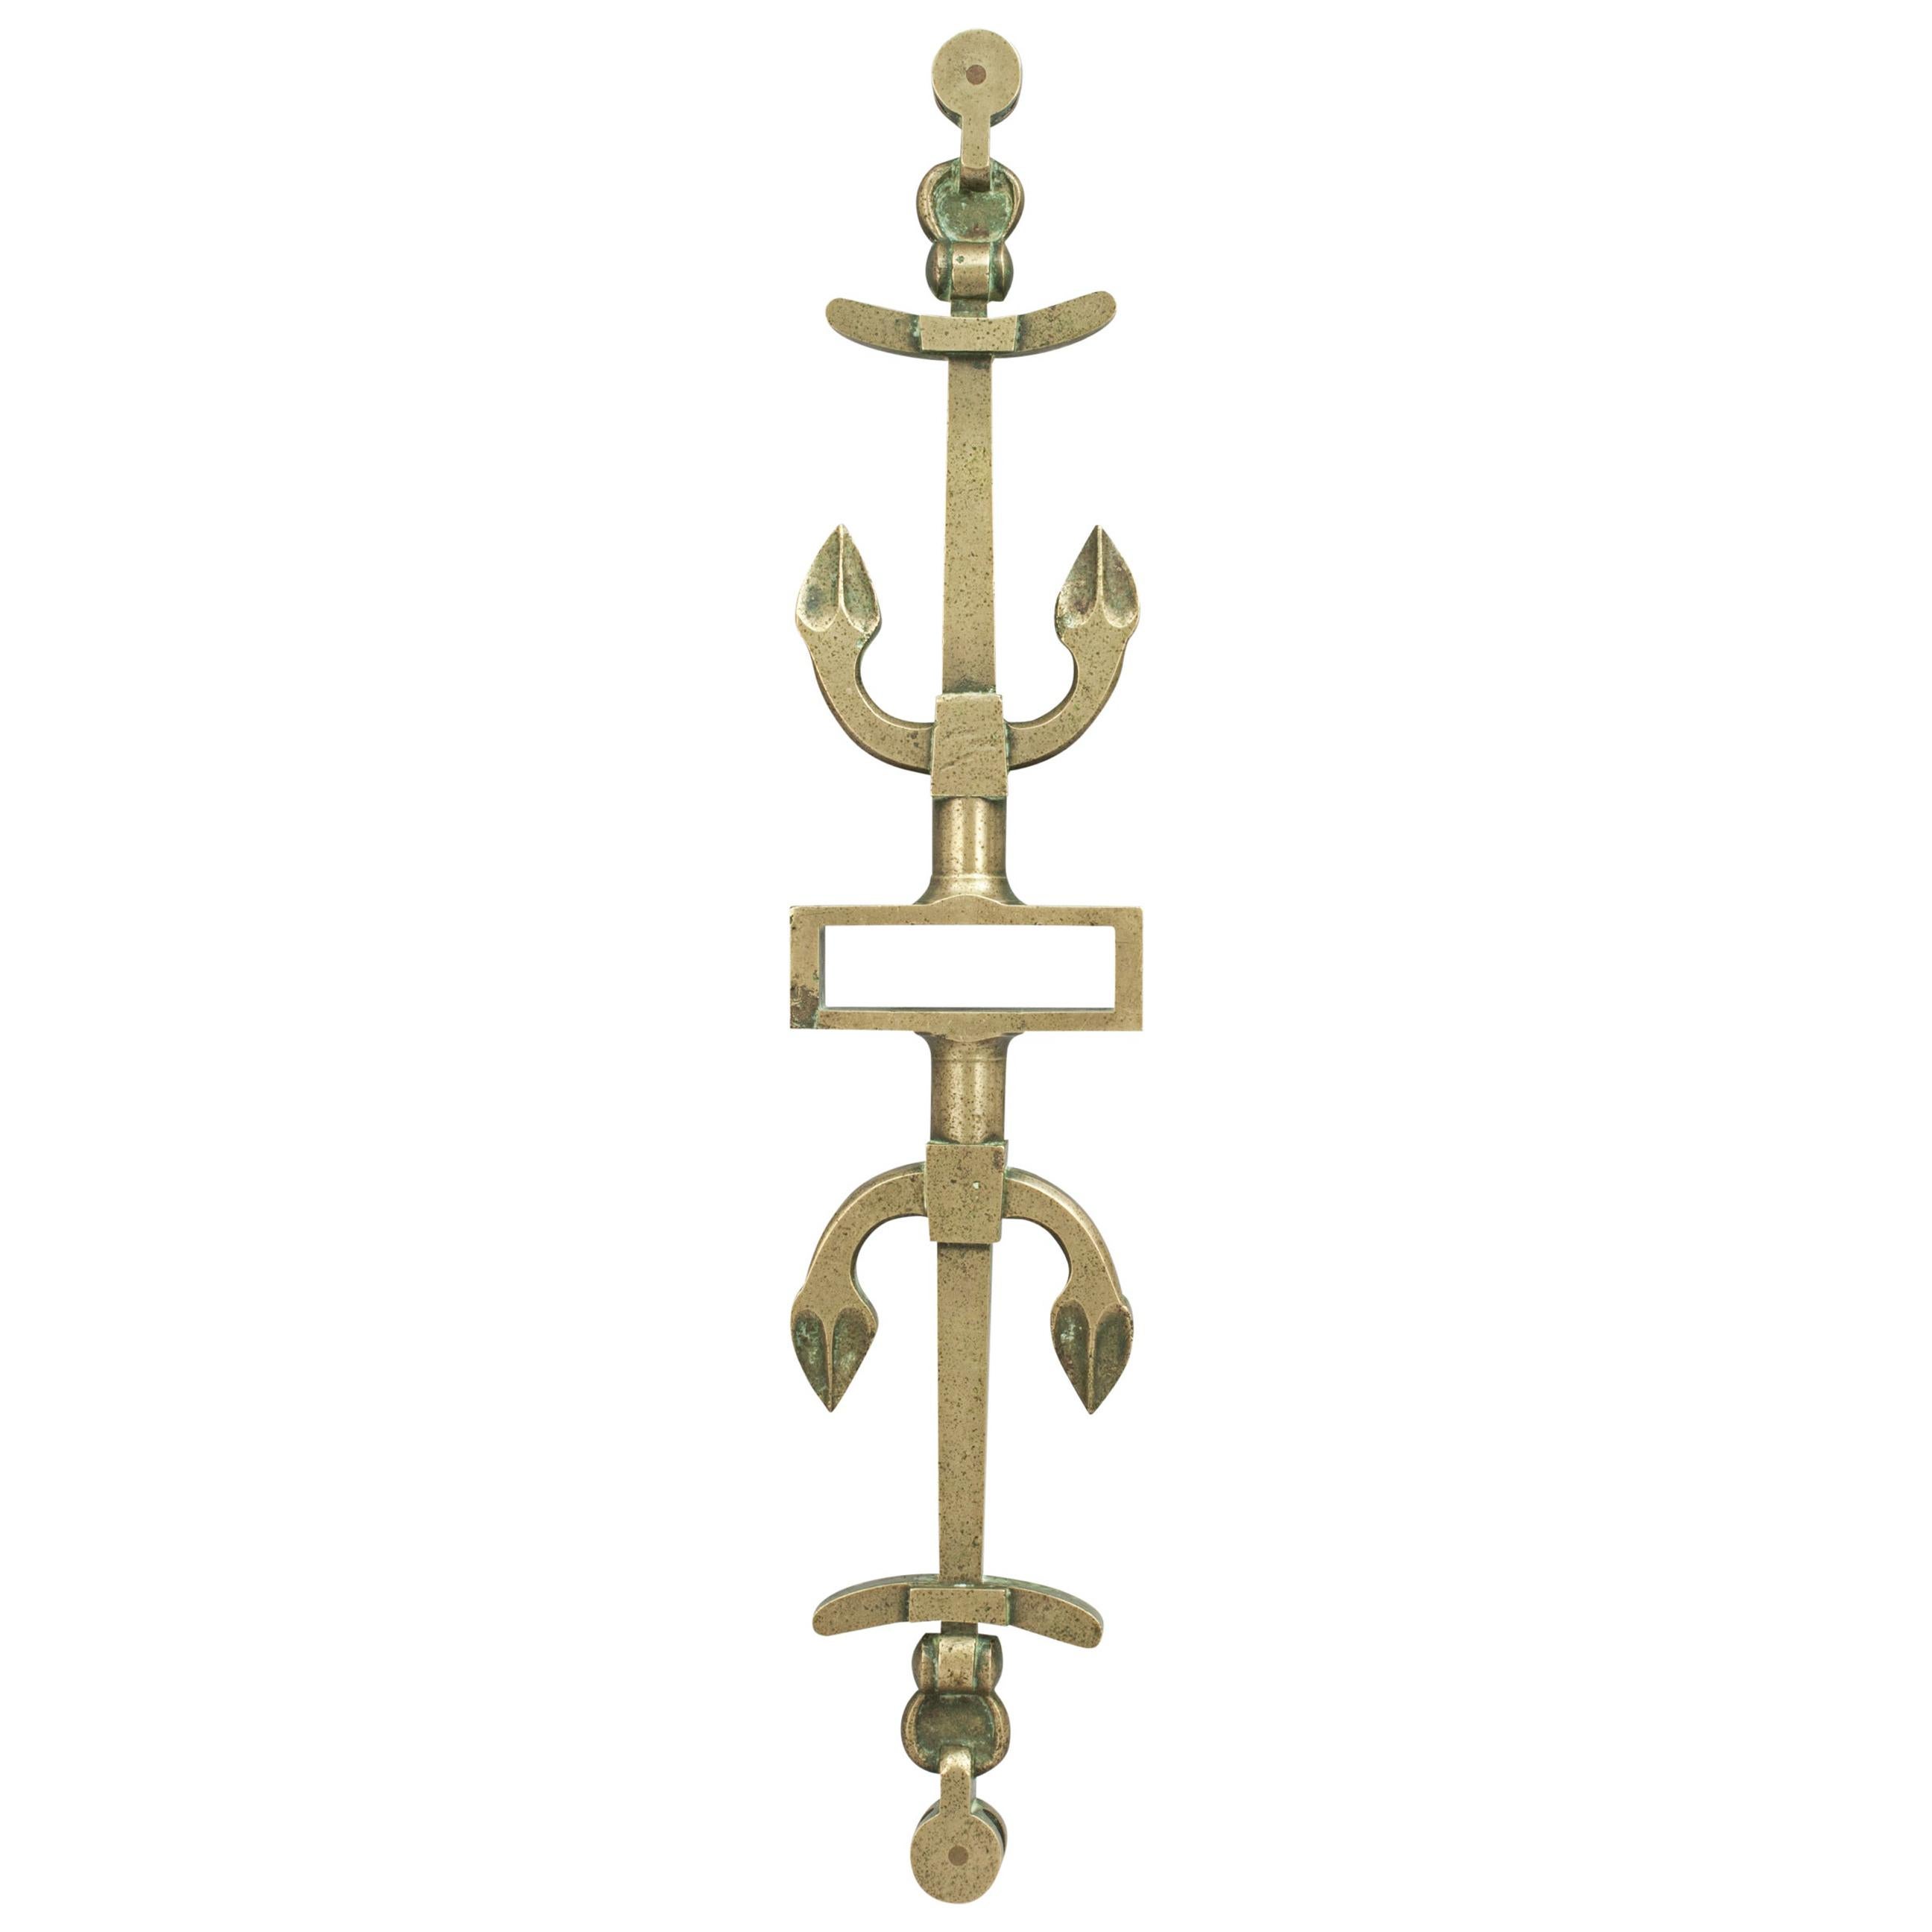 Barre de gouvernail ancien en bronze, intérêt pour l'aviron, la navigation de plaisance et la voile